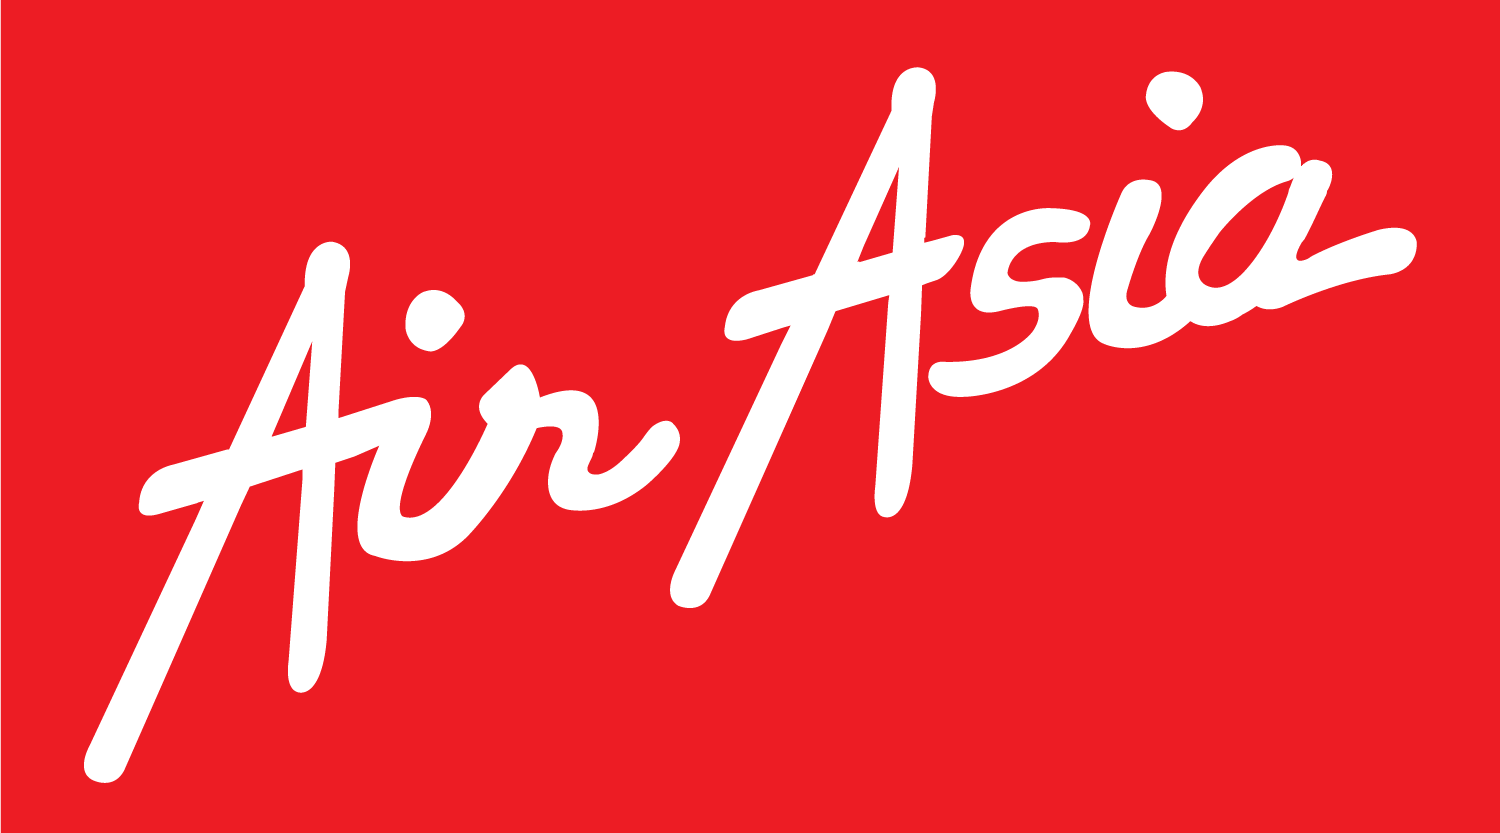 AirAsia